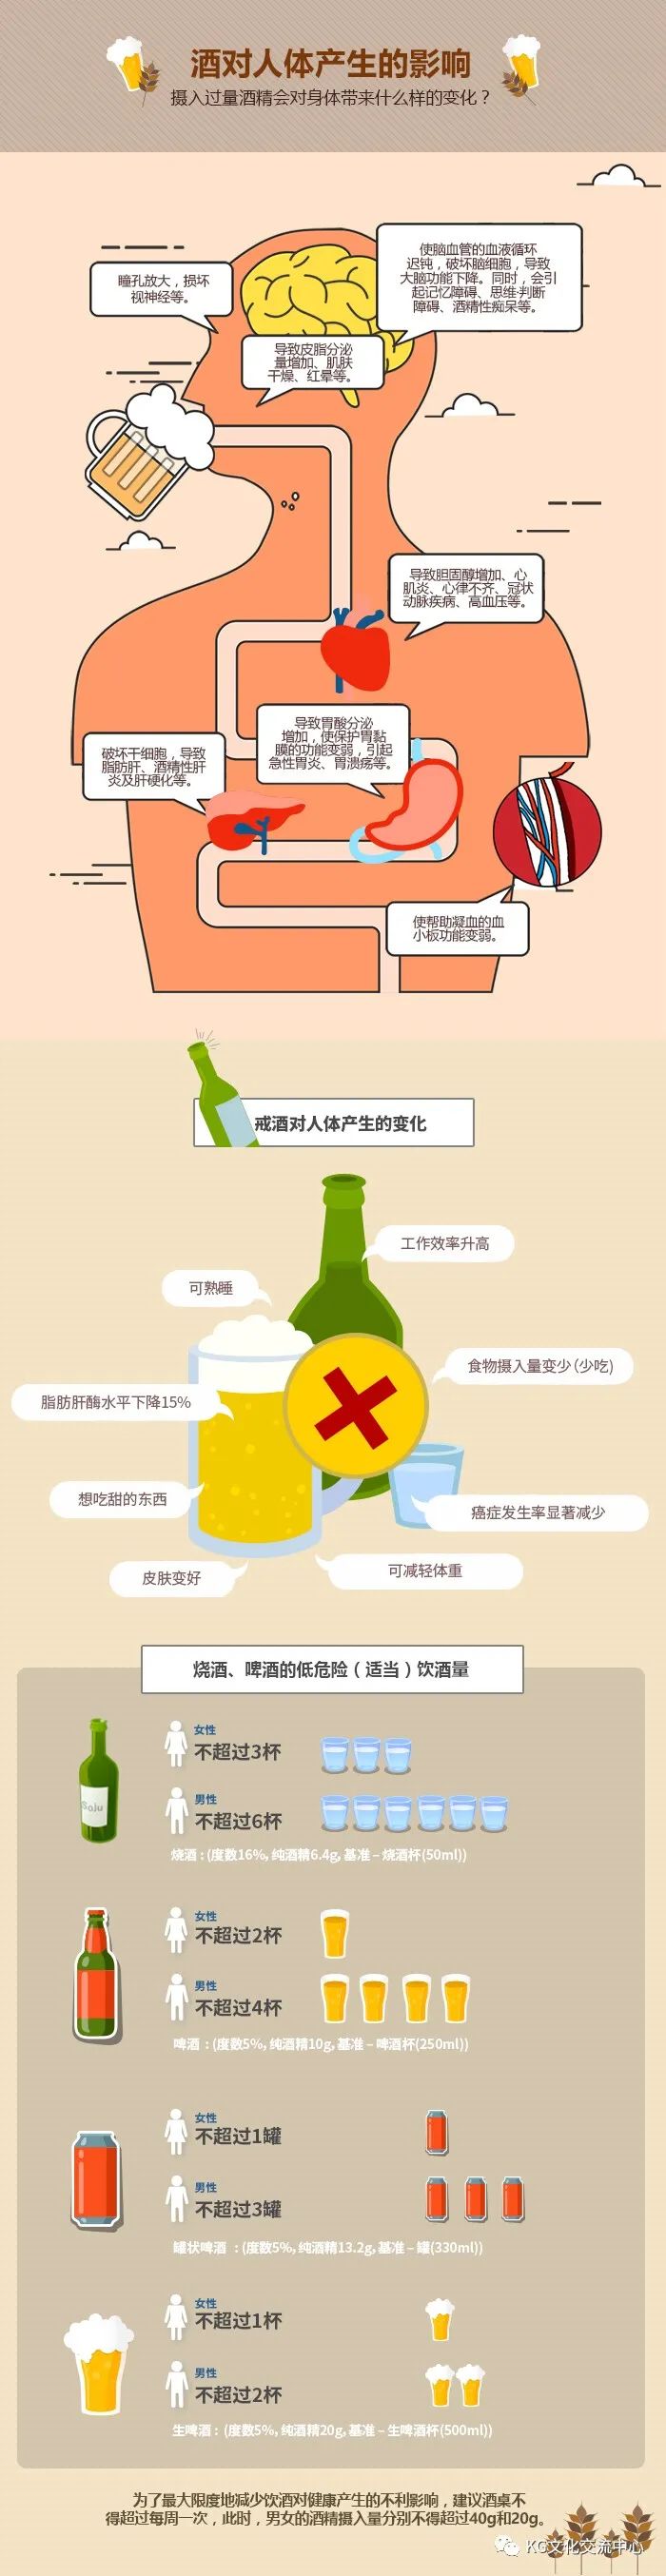 酒对人体产生的影响